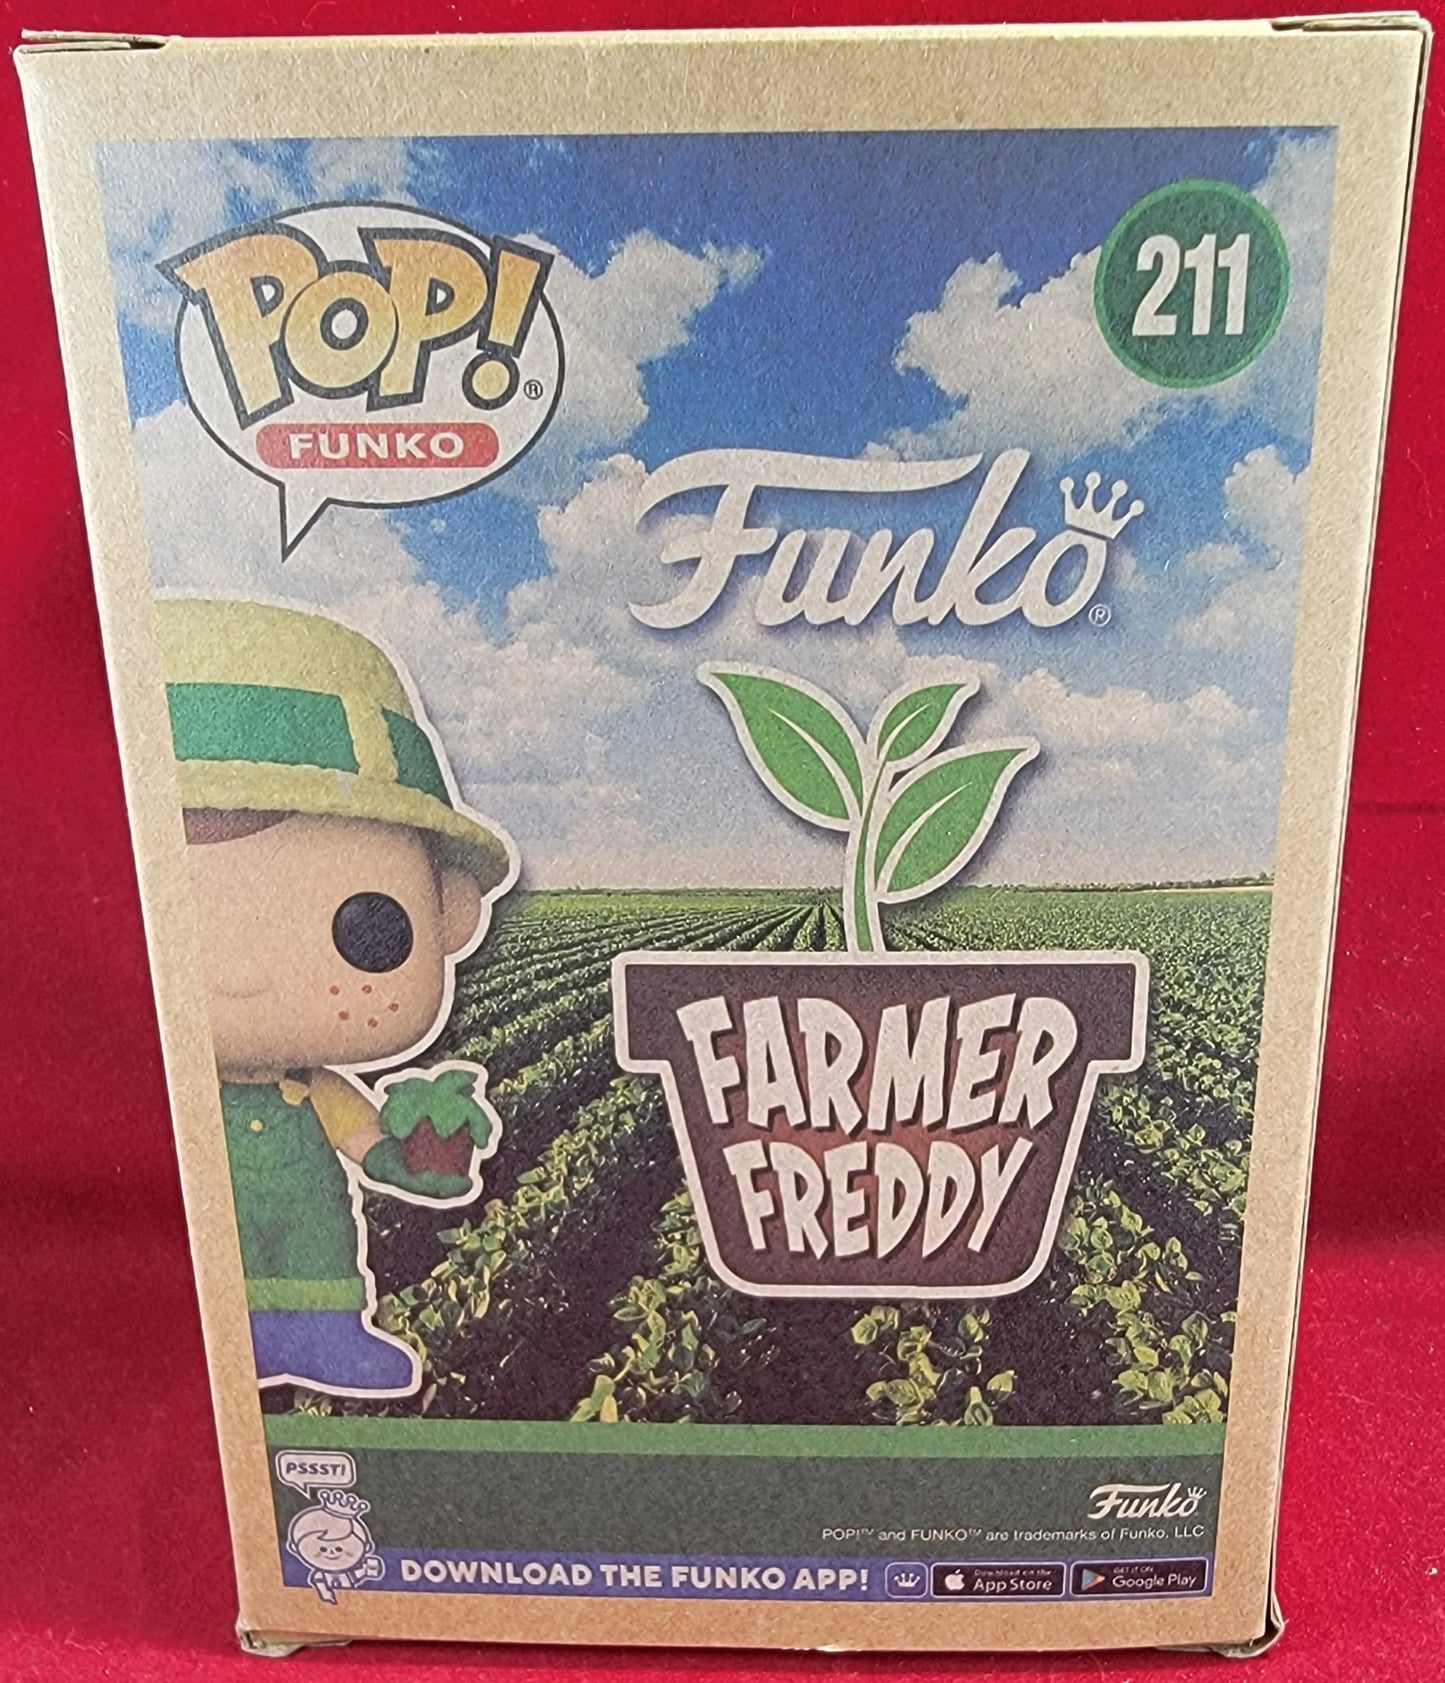 Farmer freddy funko exclusive # 211 (nib)
With pop protector